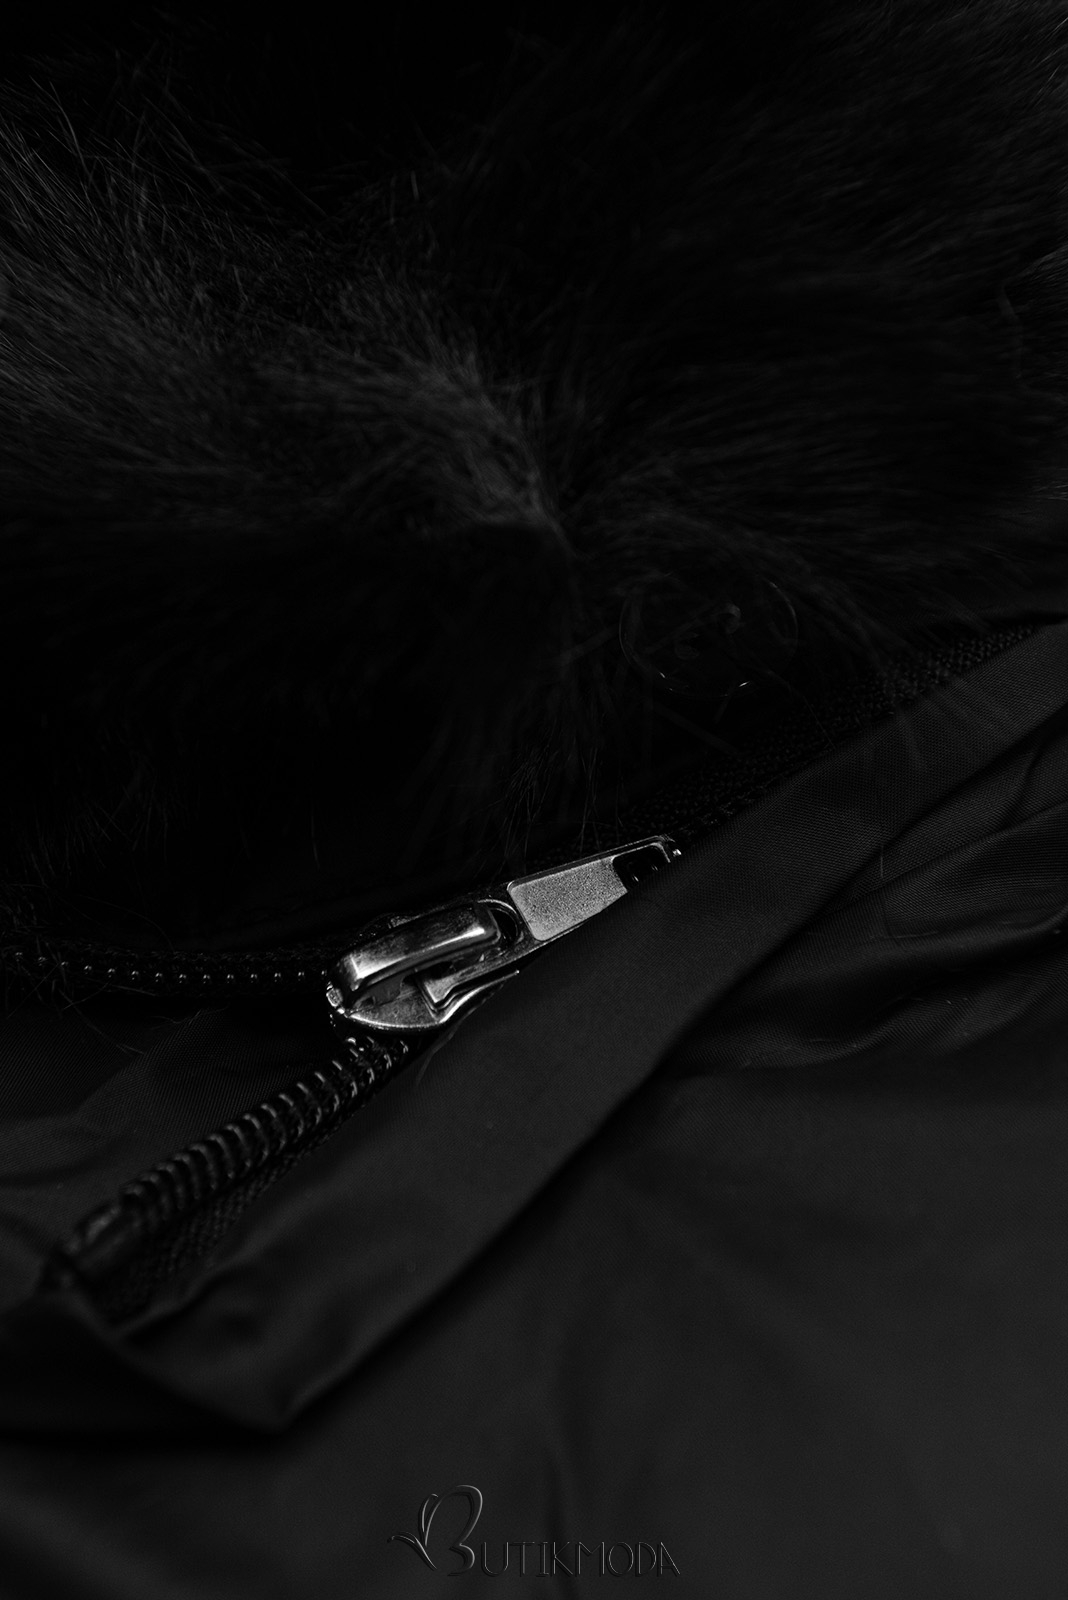 Övtáskával ellátott fekete színű kabát